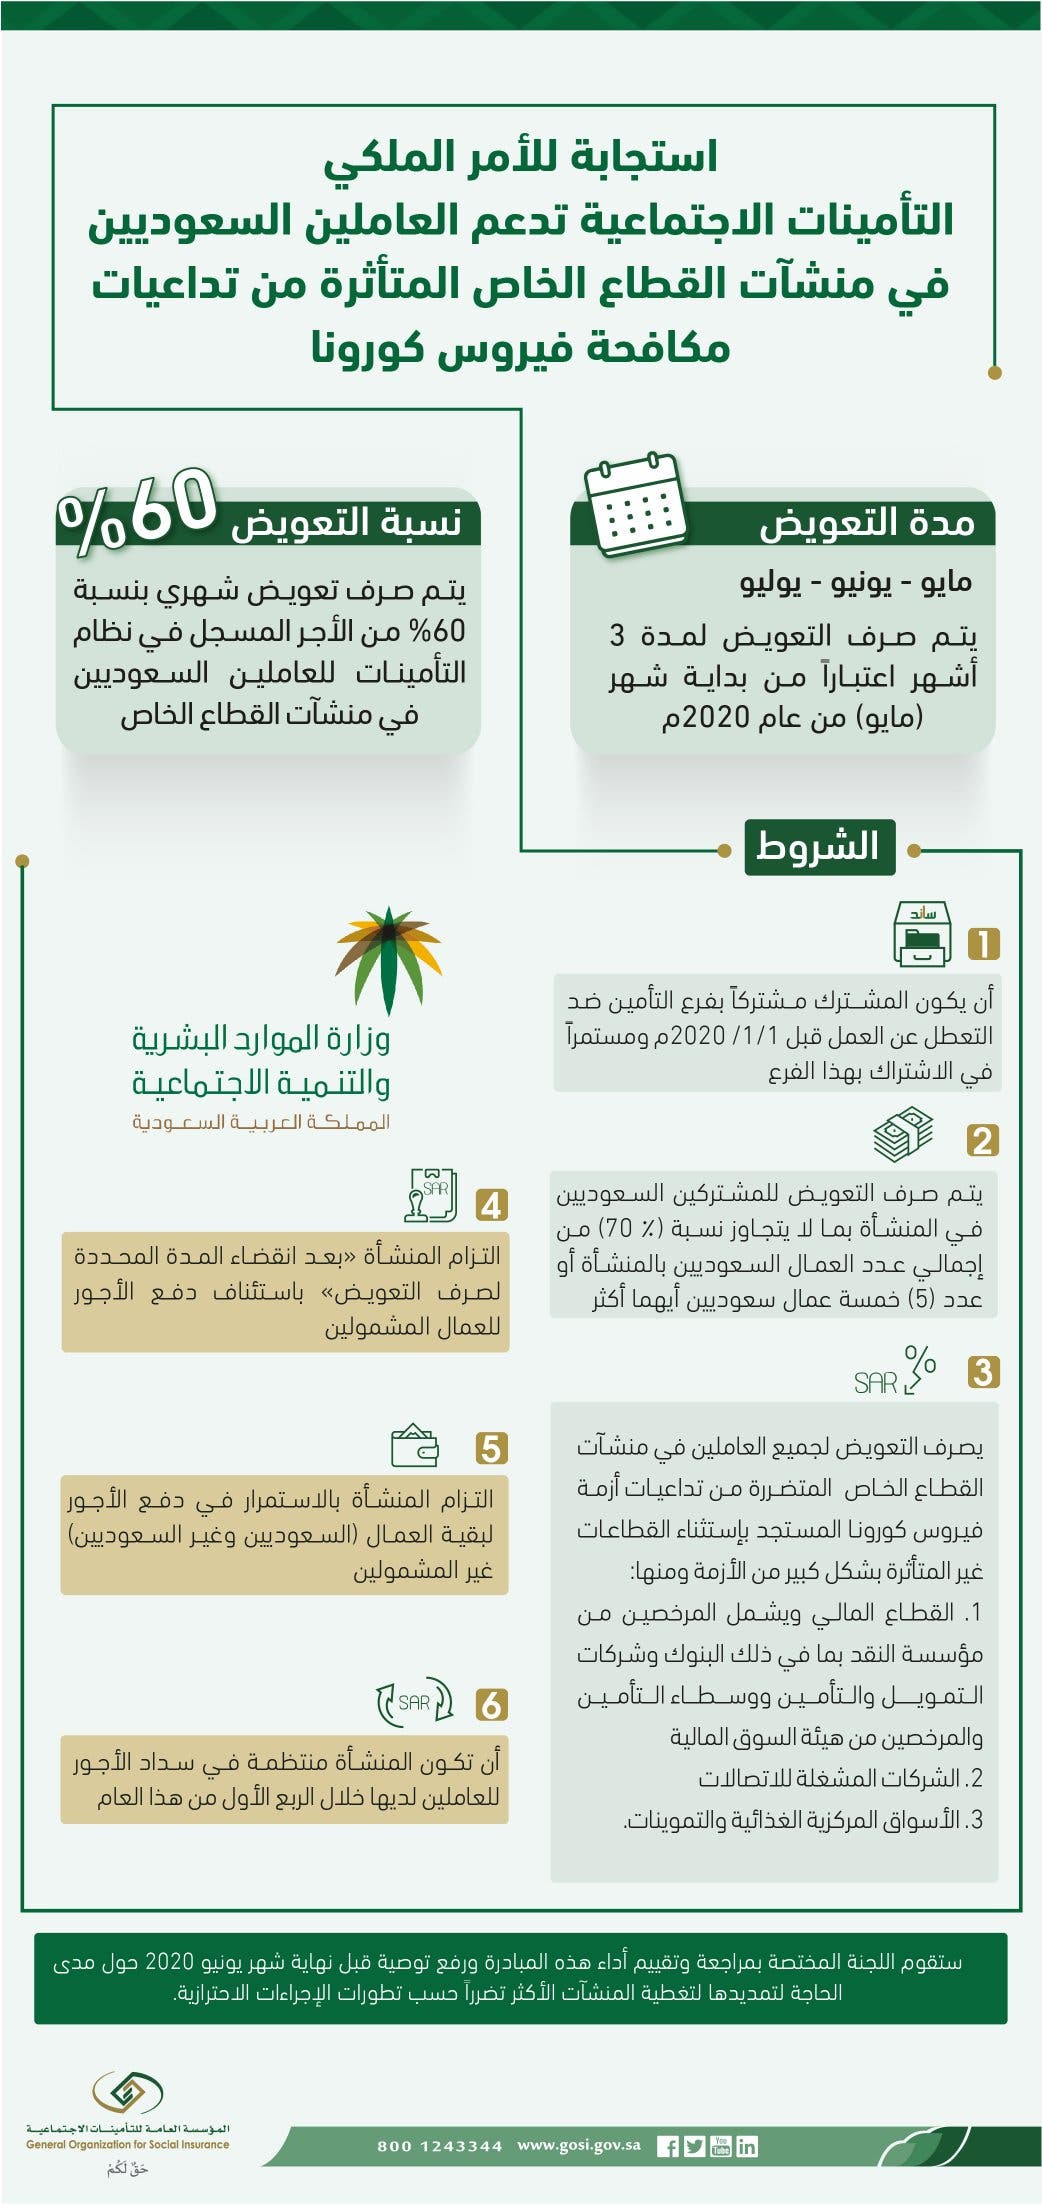 شروط تحمل الحكومة لـ60 من رواتب السعوديين بالقطاع الخاص